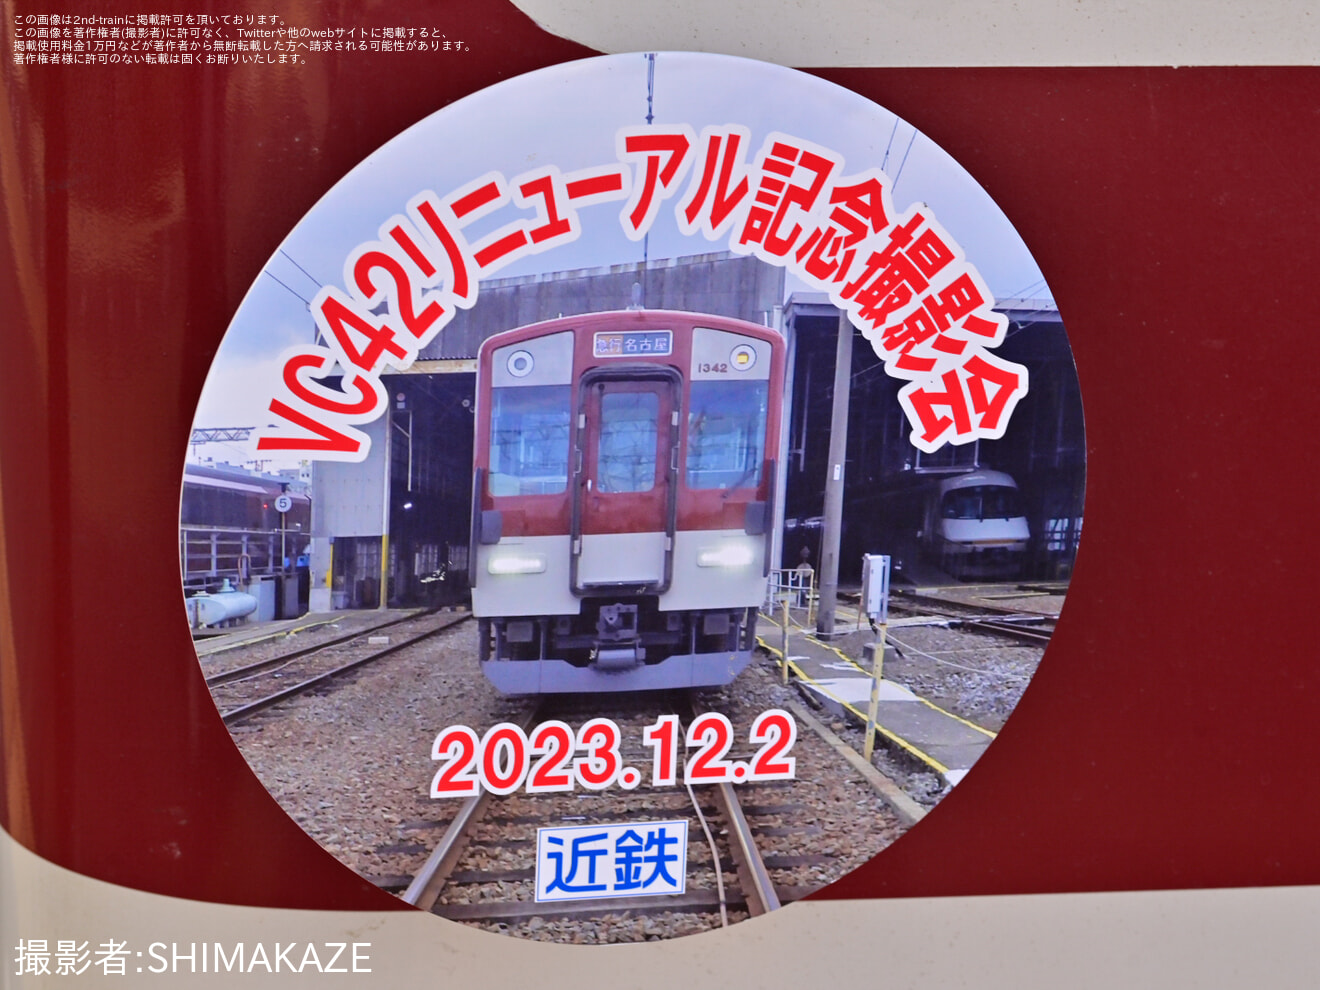 【近鉄】2000系XT05「VC42リニューアル記念撮影会」を告知するヘッドマークが取り付けの拡大写真